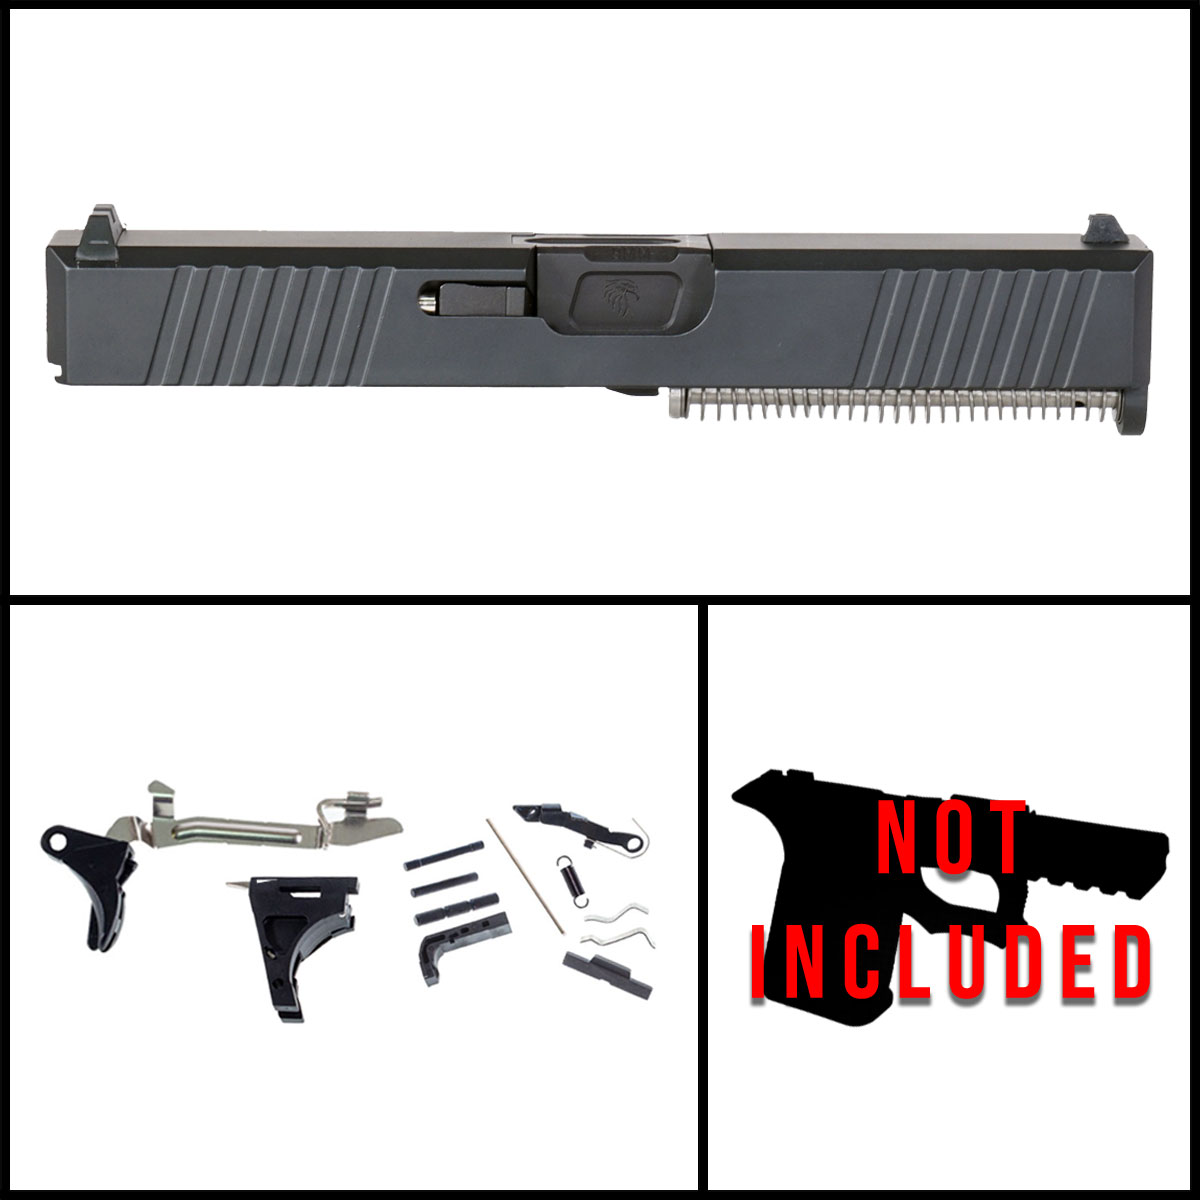 DTT 'Lucid Chaos' 9mm Full Pistol Build Kit (Everything Minus Frame) - Glock 19 Gen 1-3 Compatible